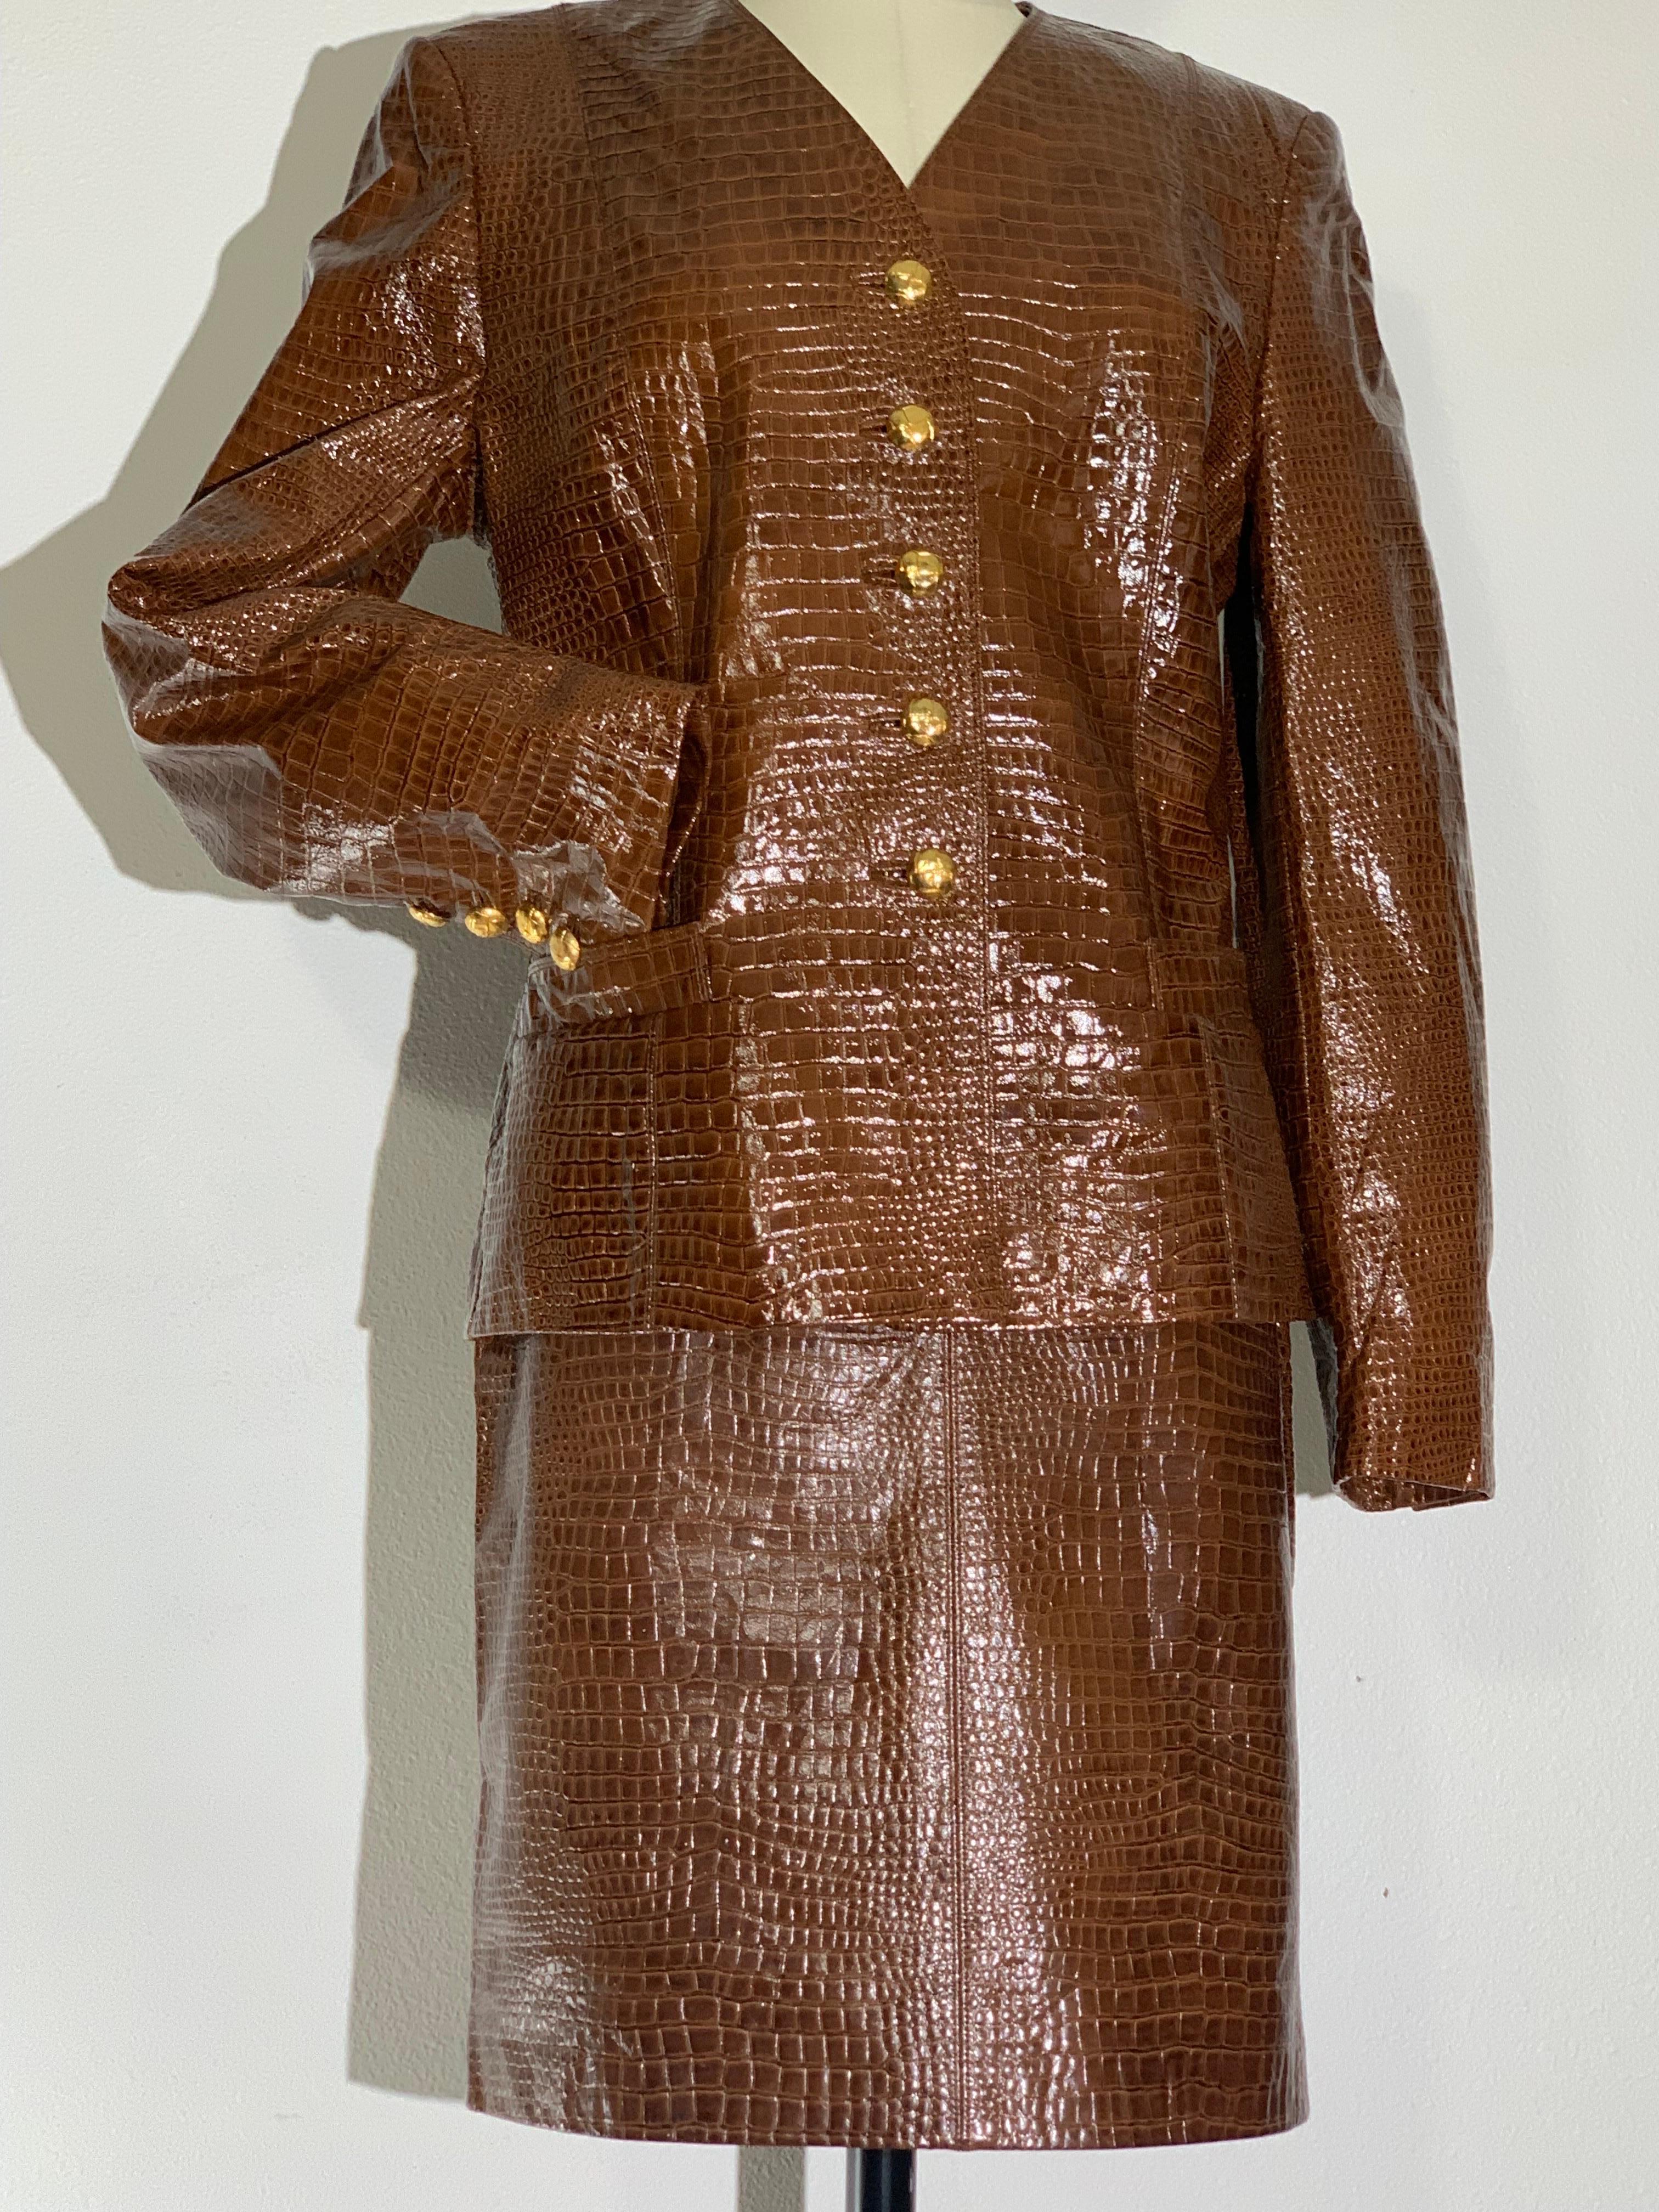 Costume jupe en cuir marron verni gaufré au crocodile, avec gros boutons dorés, des années 1980, Escada : Tailleur sans col, avec un dos à pinces pour une silhouette ajustée. Design/One d'inspiration masculine avec de gros boutons dorés en forme de